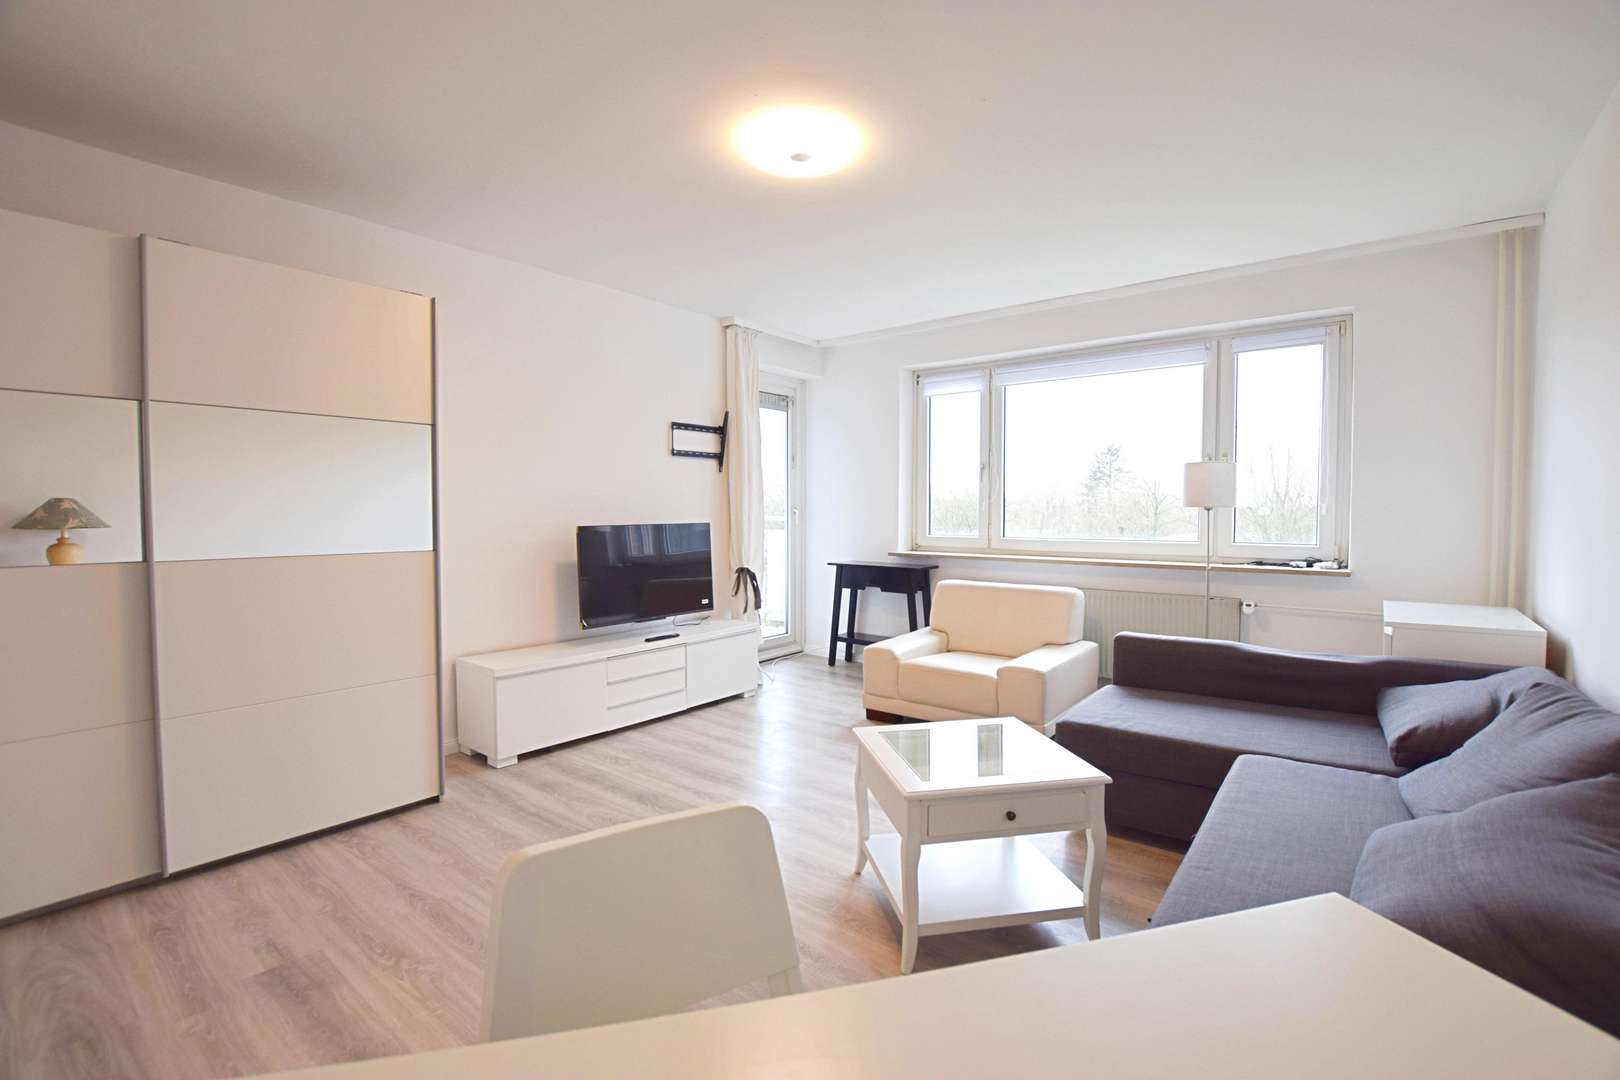 Wohnbereich mit Balkonzugang - Etagenwohnung in 25462 Rellingen mit 71m² kaufen